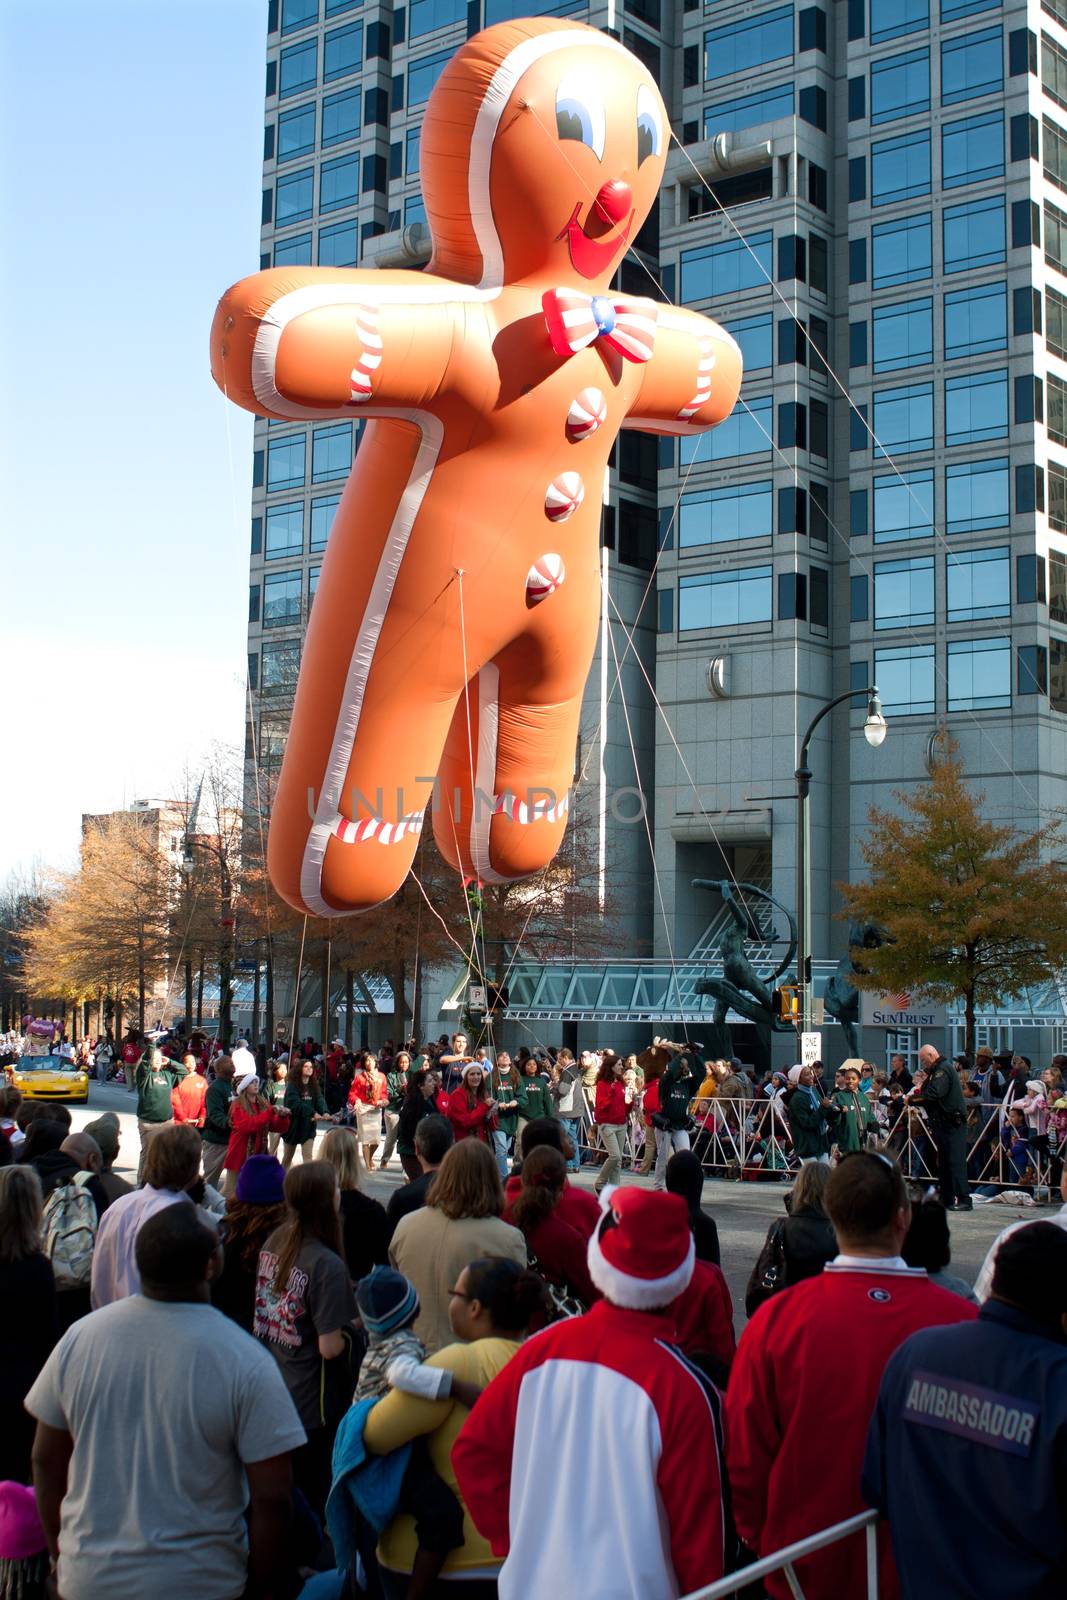 Gingerbread Man Balloon Floats Through Atlanta Christmas Parade by BluIz60